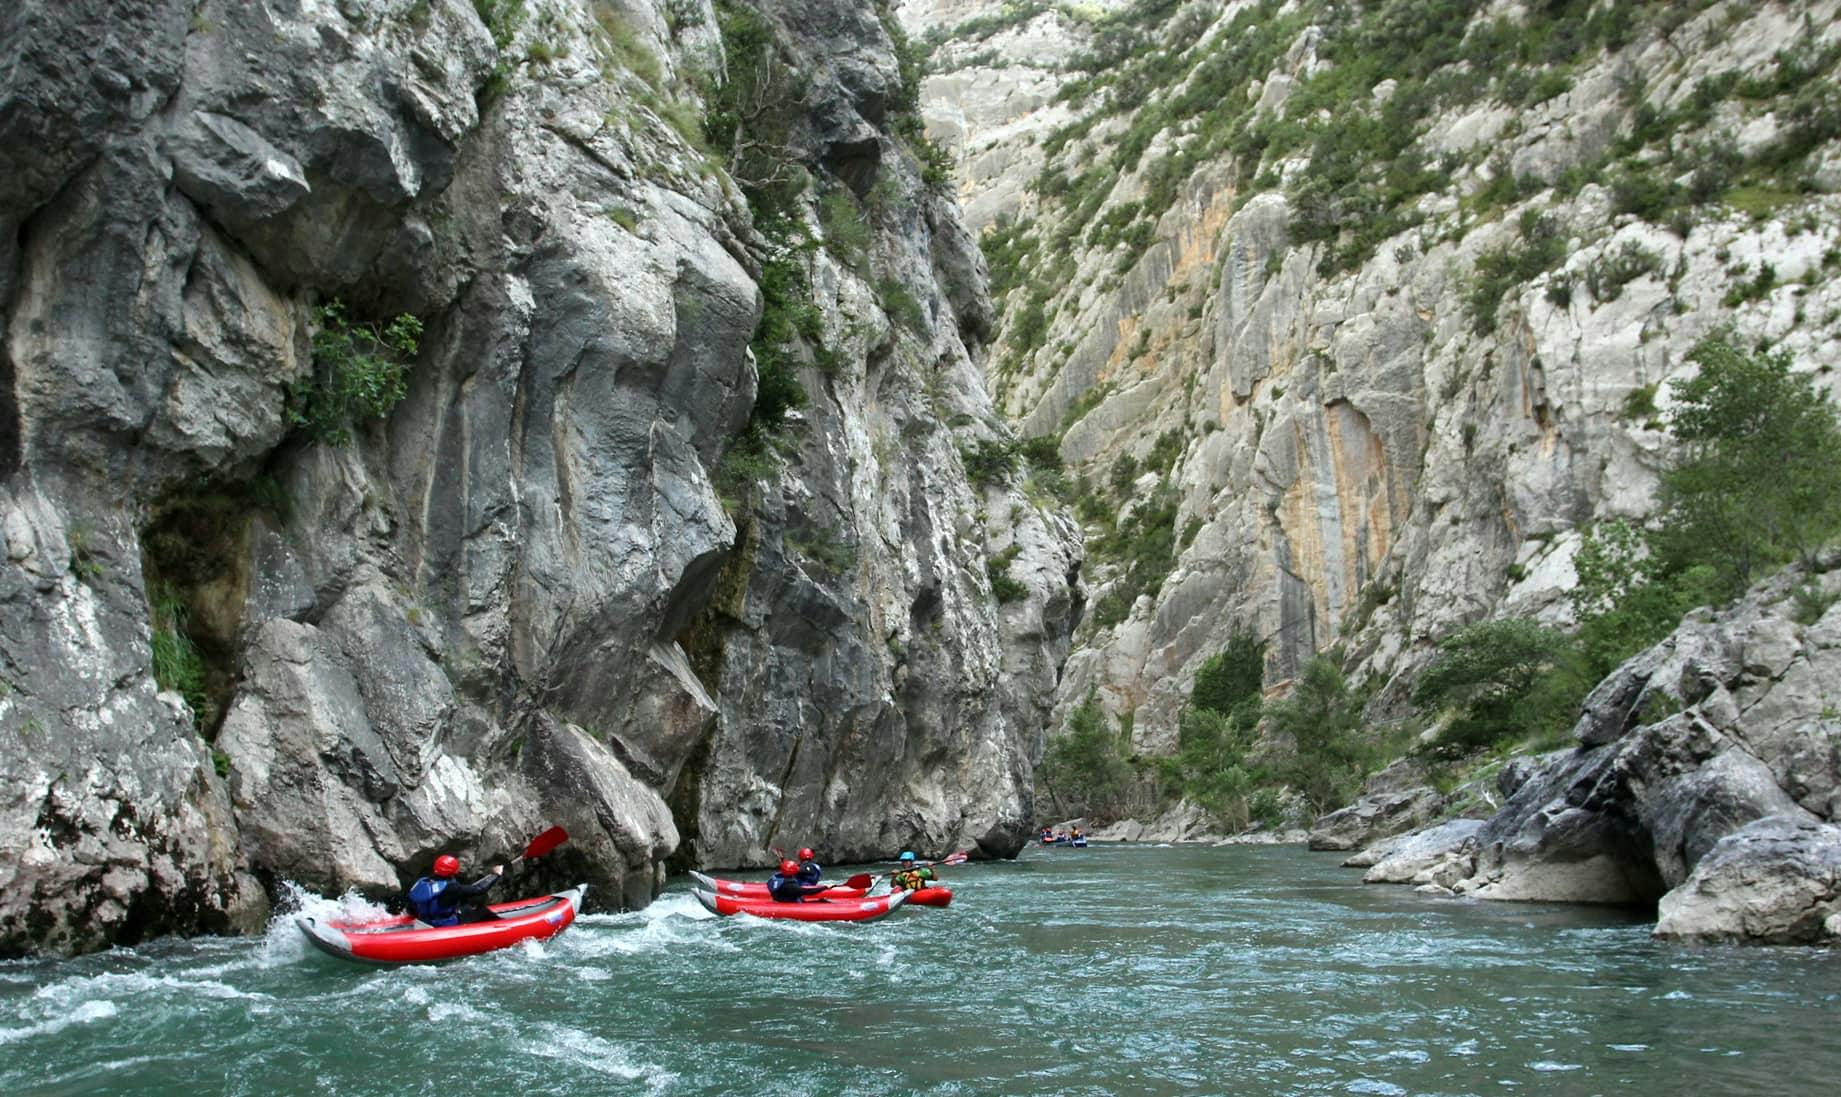 Kayaking on River Noguera Pallaresa